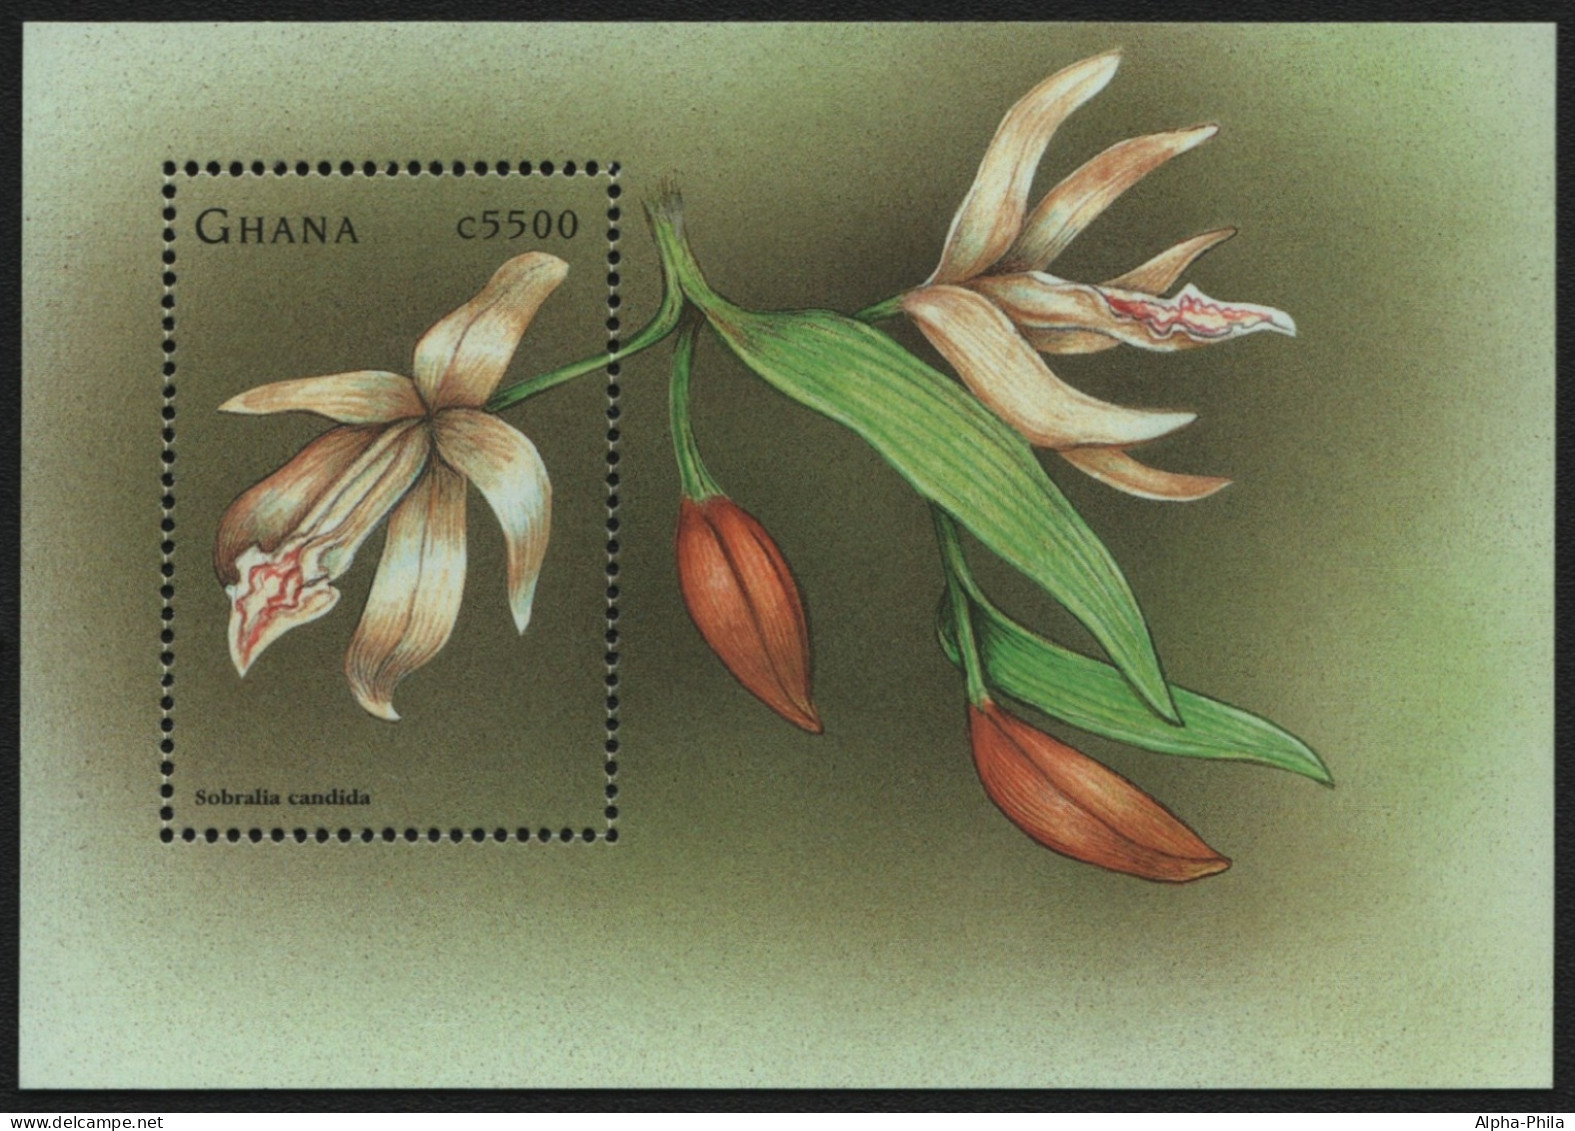 Ghana 1998 - Mi-Nr. Block 353 ** - MNH - Orchideen / Orchids - Ghana (1957-...)